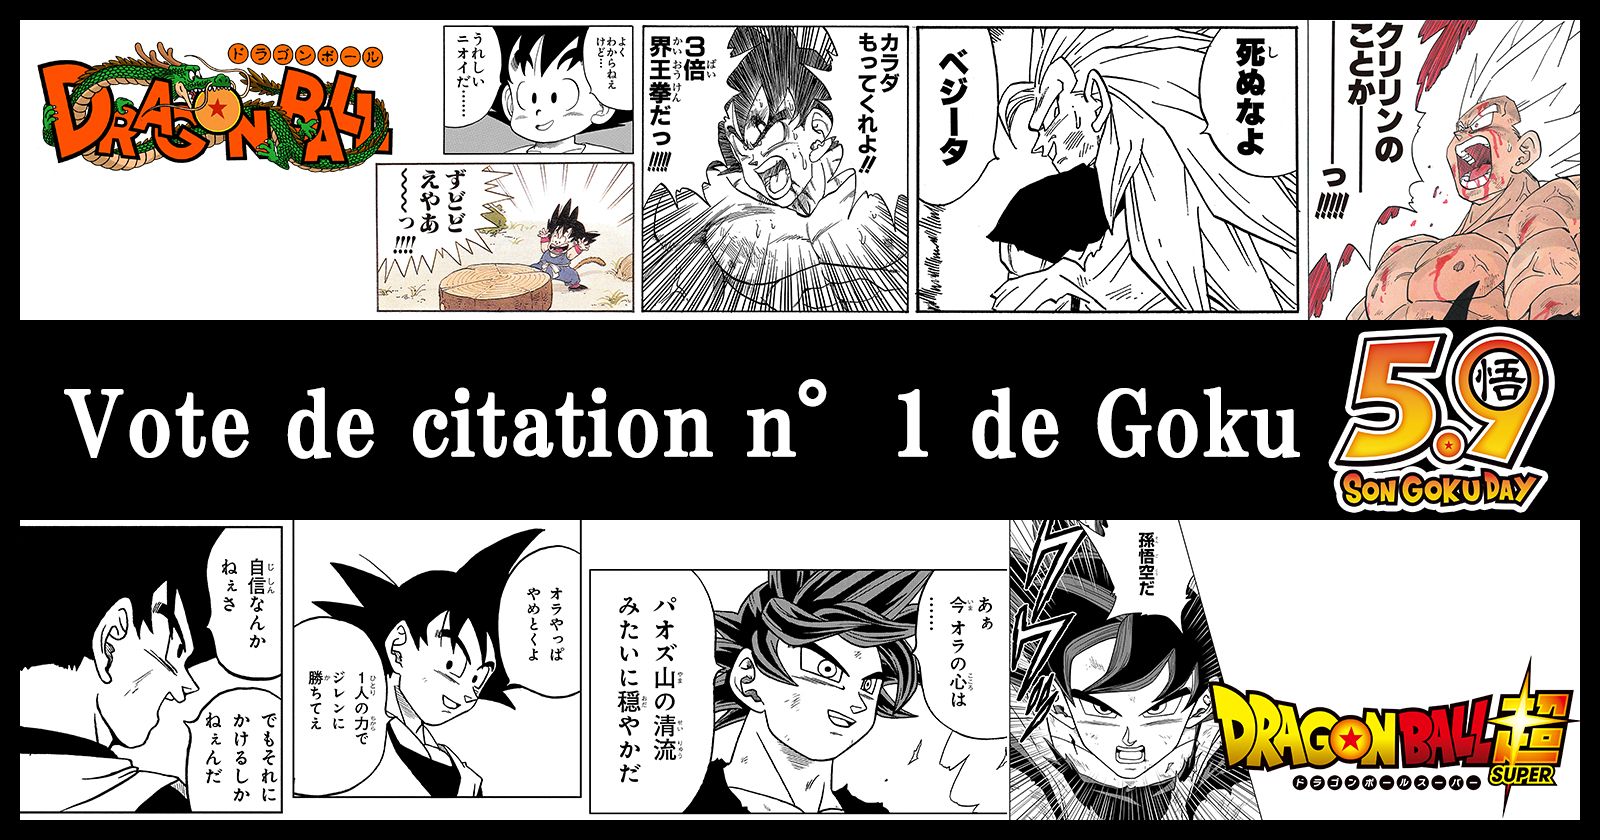 Le Vote de citation n ° 1 de Goku est en cours pour célébrer la Goku Day!! 1er endroit à transformer en véritable merch !